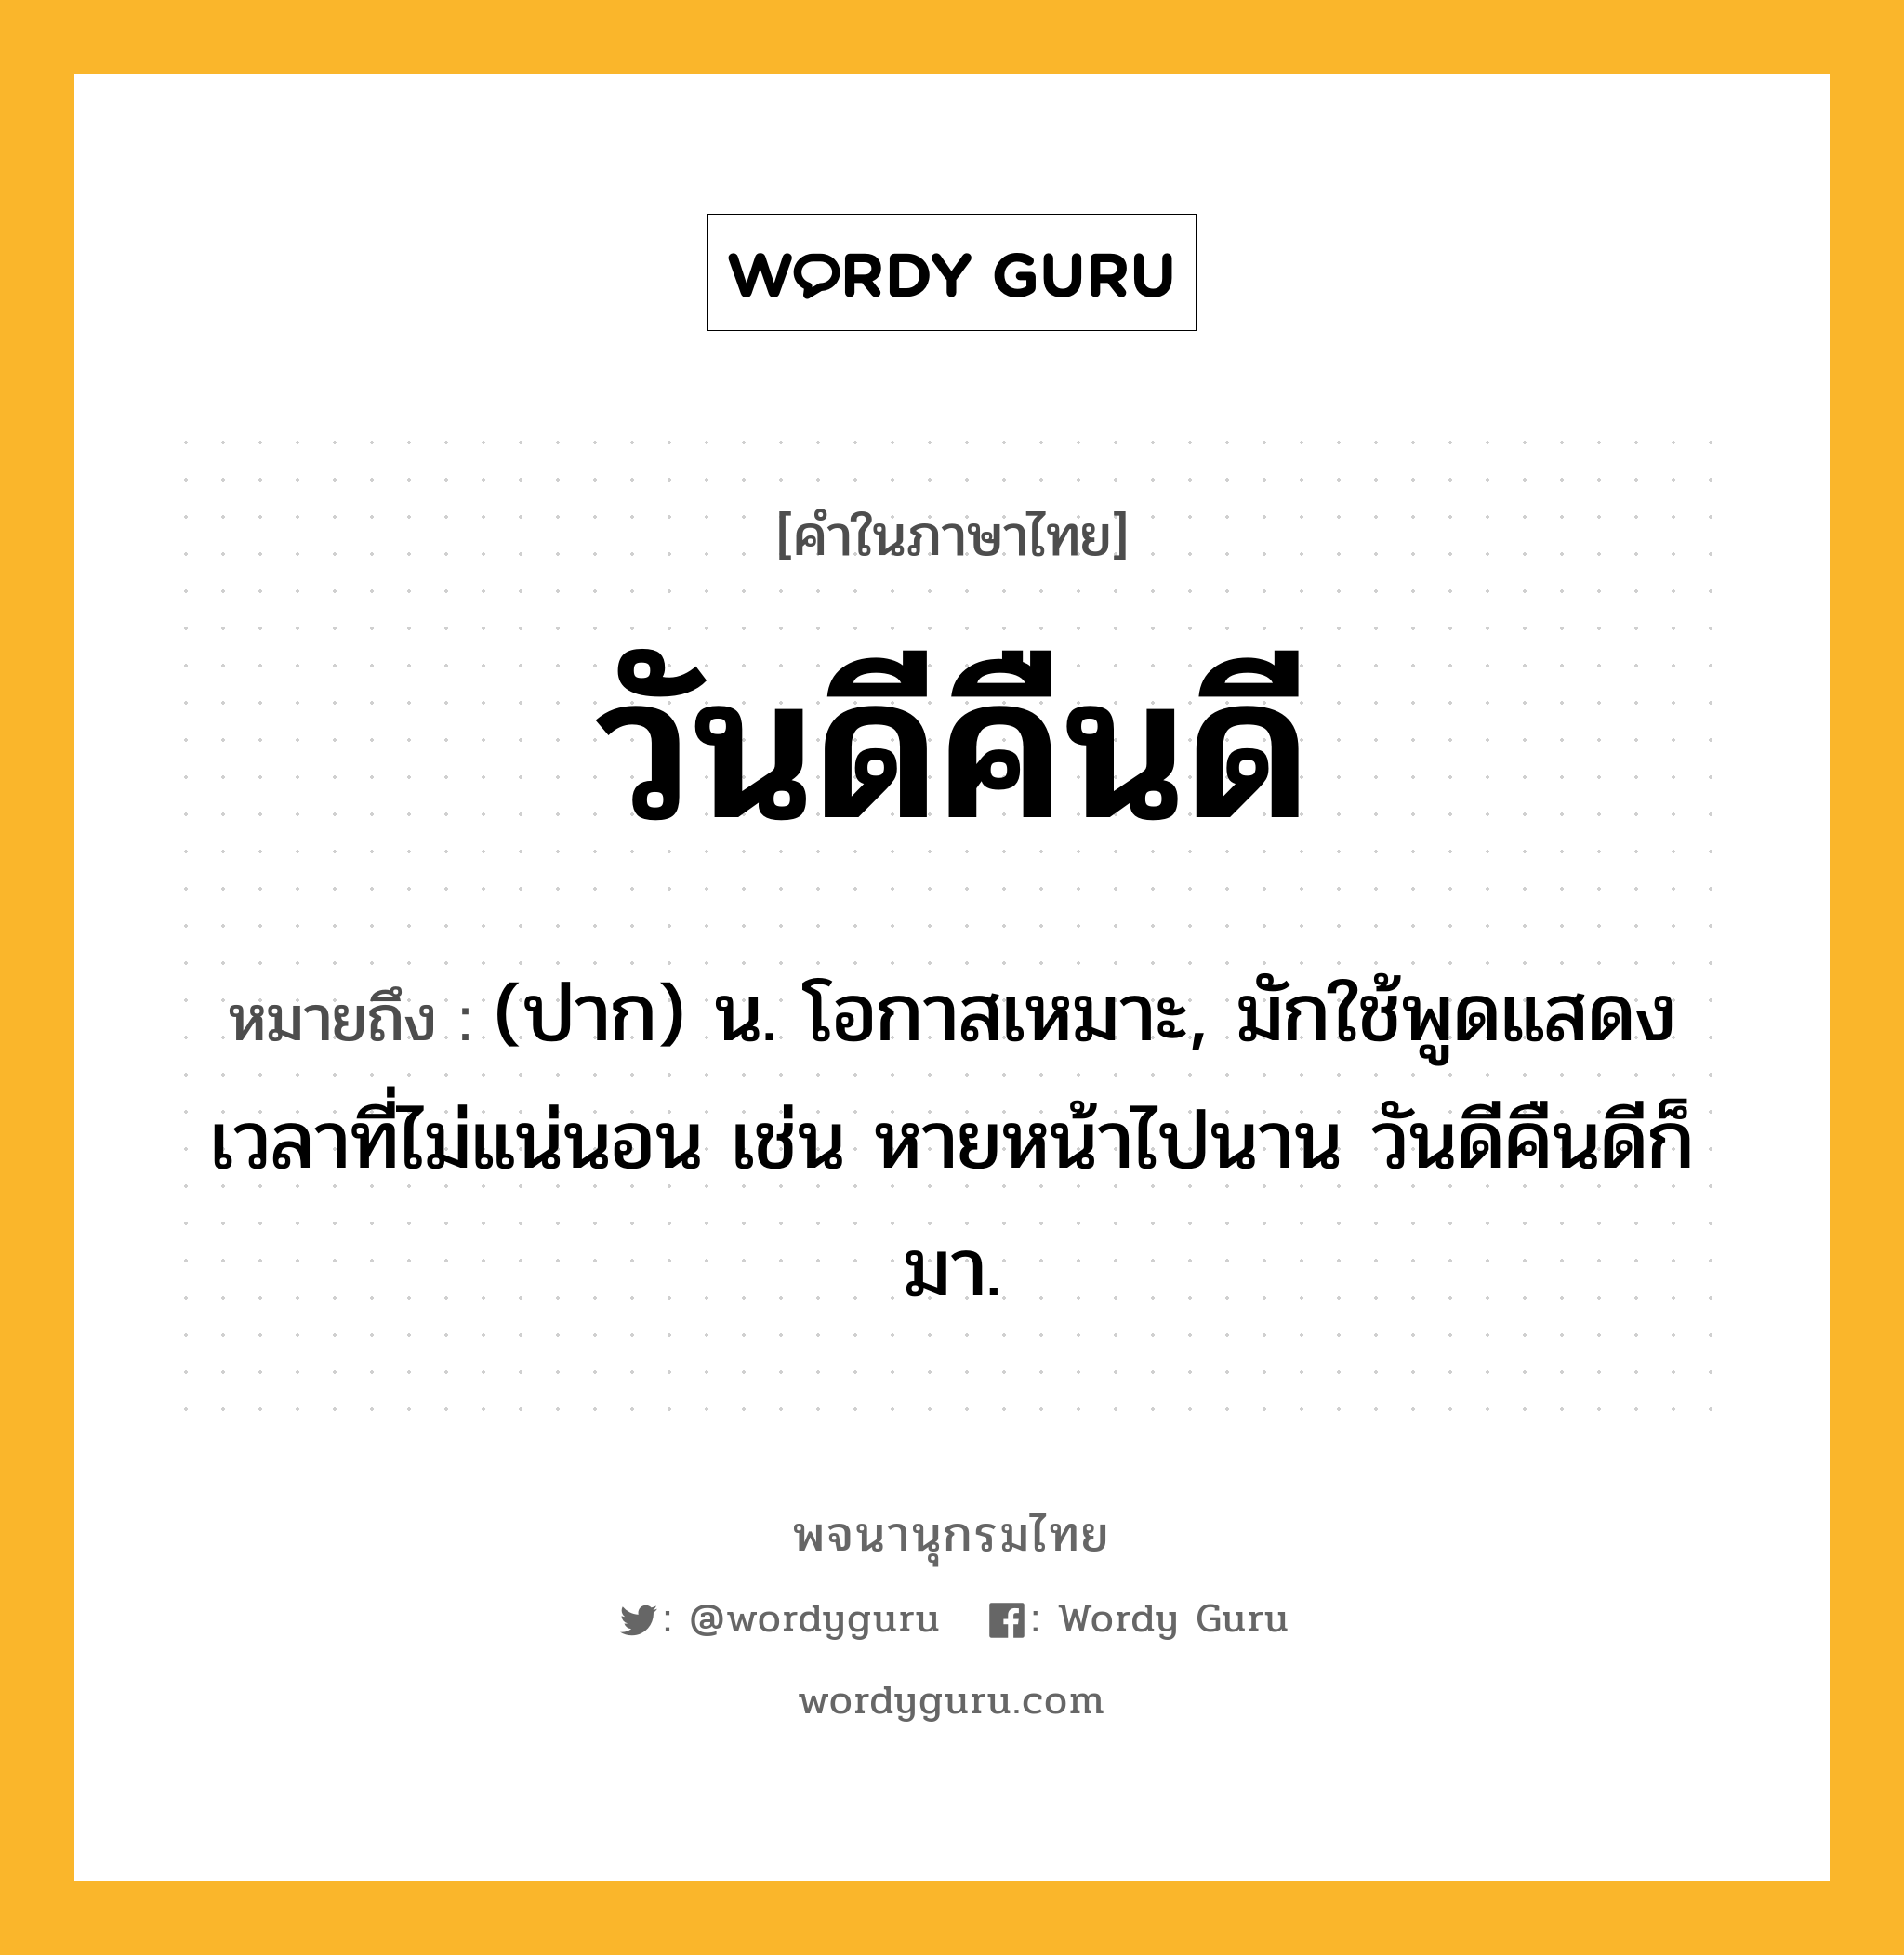 วันดีคืนดี หมายถึงอะไร?, คำในภาษาไทย วันดีคืนดี หมายถึง (ปาก) น. โอกาสเหมาะ, มักใช้พูดแสดงเวลาที่ไม่แน่นอน เช่น หายหน้าไปนาน วันดีคืนดีก็มา.